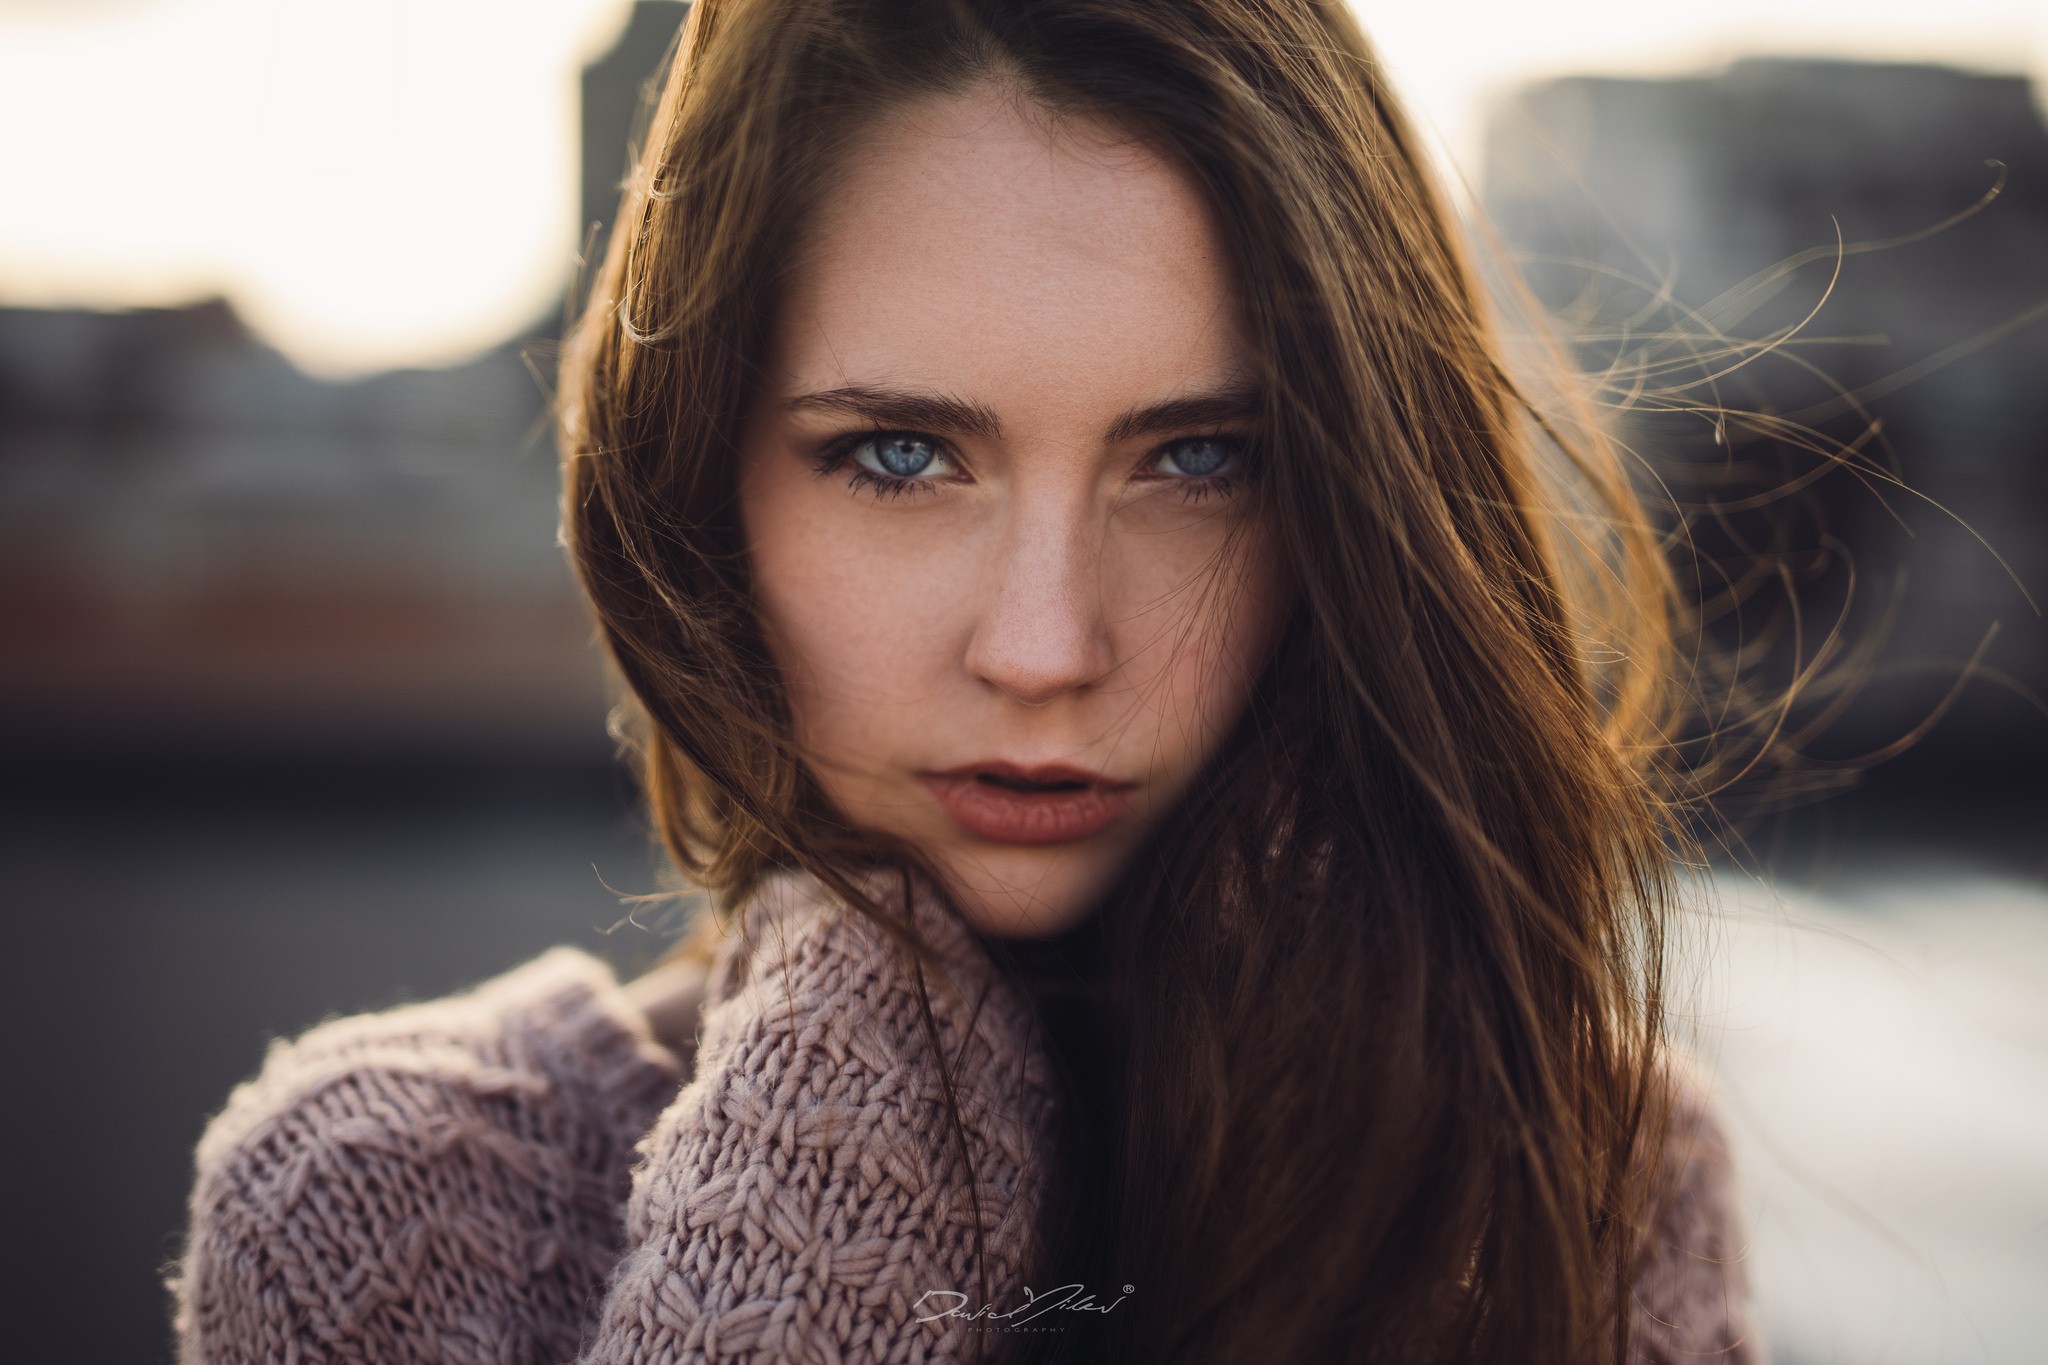 People 2048x1365 women portrait blue eyes depth of field women outdoors David Milev face model